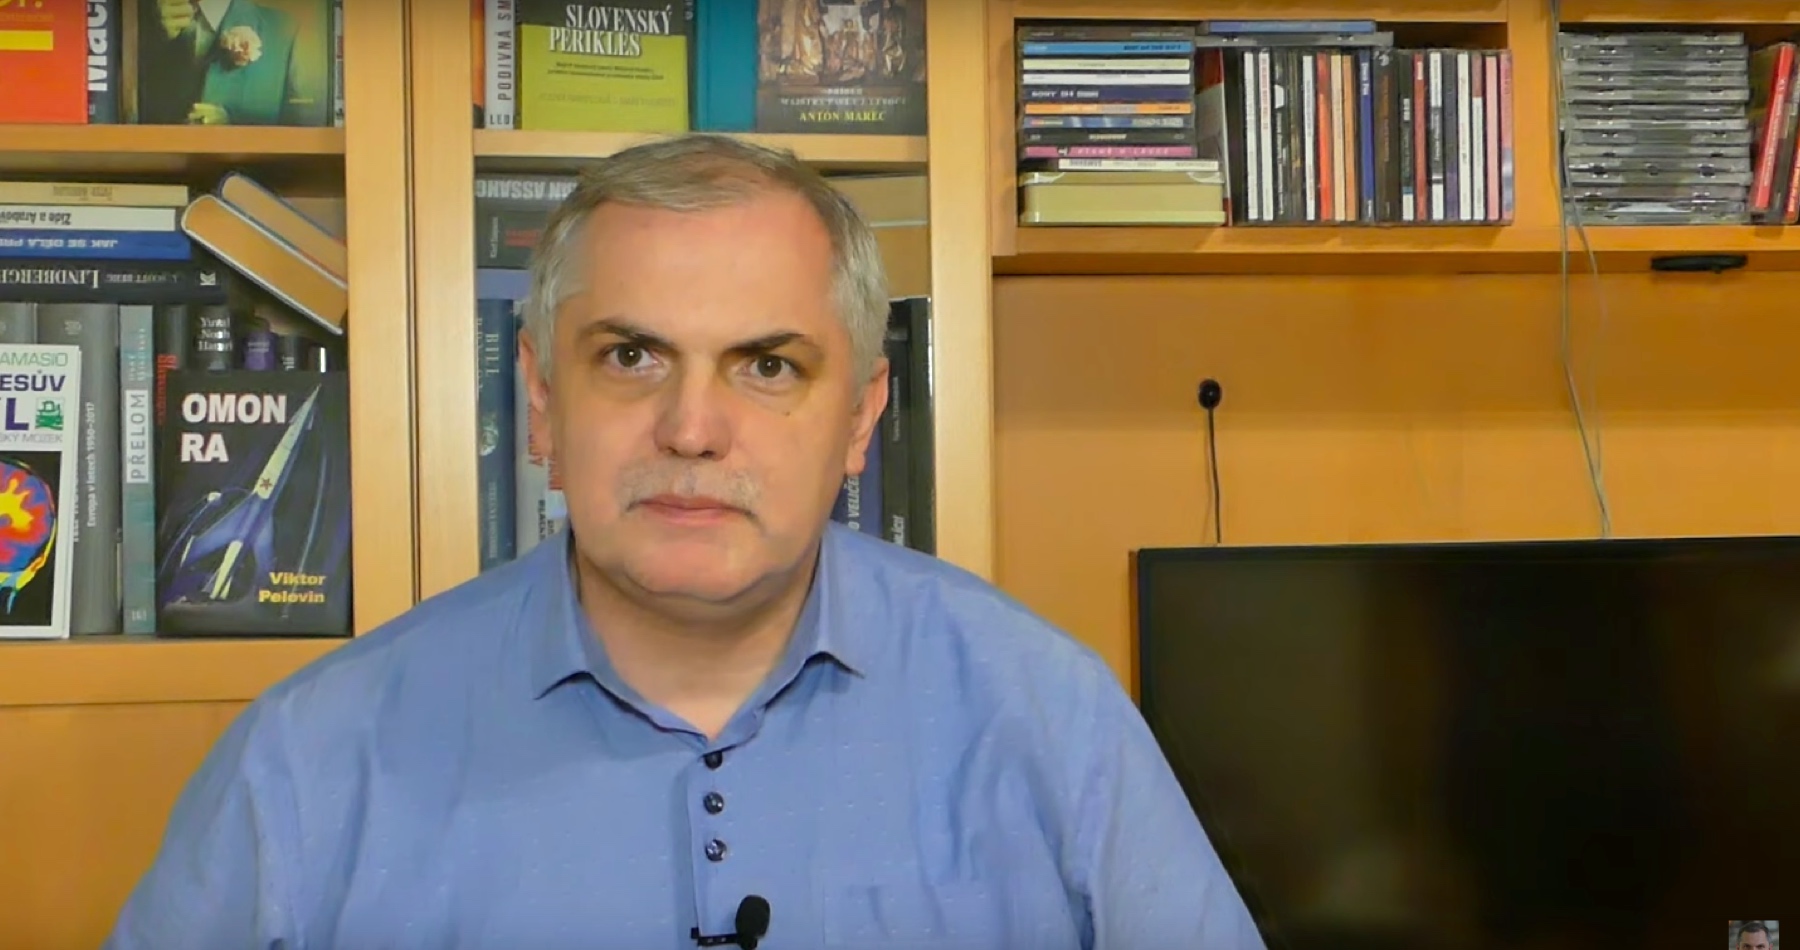 VIDEO: Michelko o neúspešnom odvolávaní ministra vnútra Šutaja Eštoka, obludnostiach nápachaných za ostatných 3,5 roka v spolitizovanej polícii a nadchádzajúcom konci Lipšica aj jeho prokuratúry